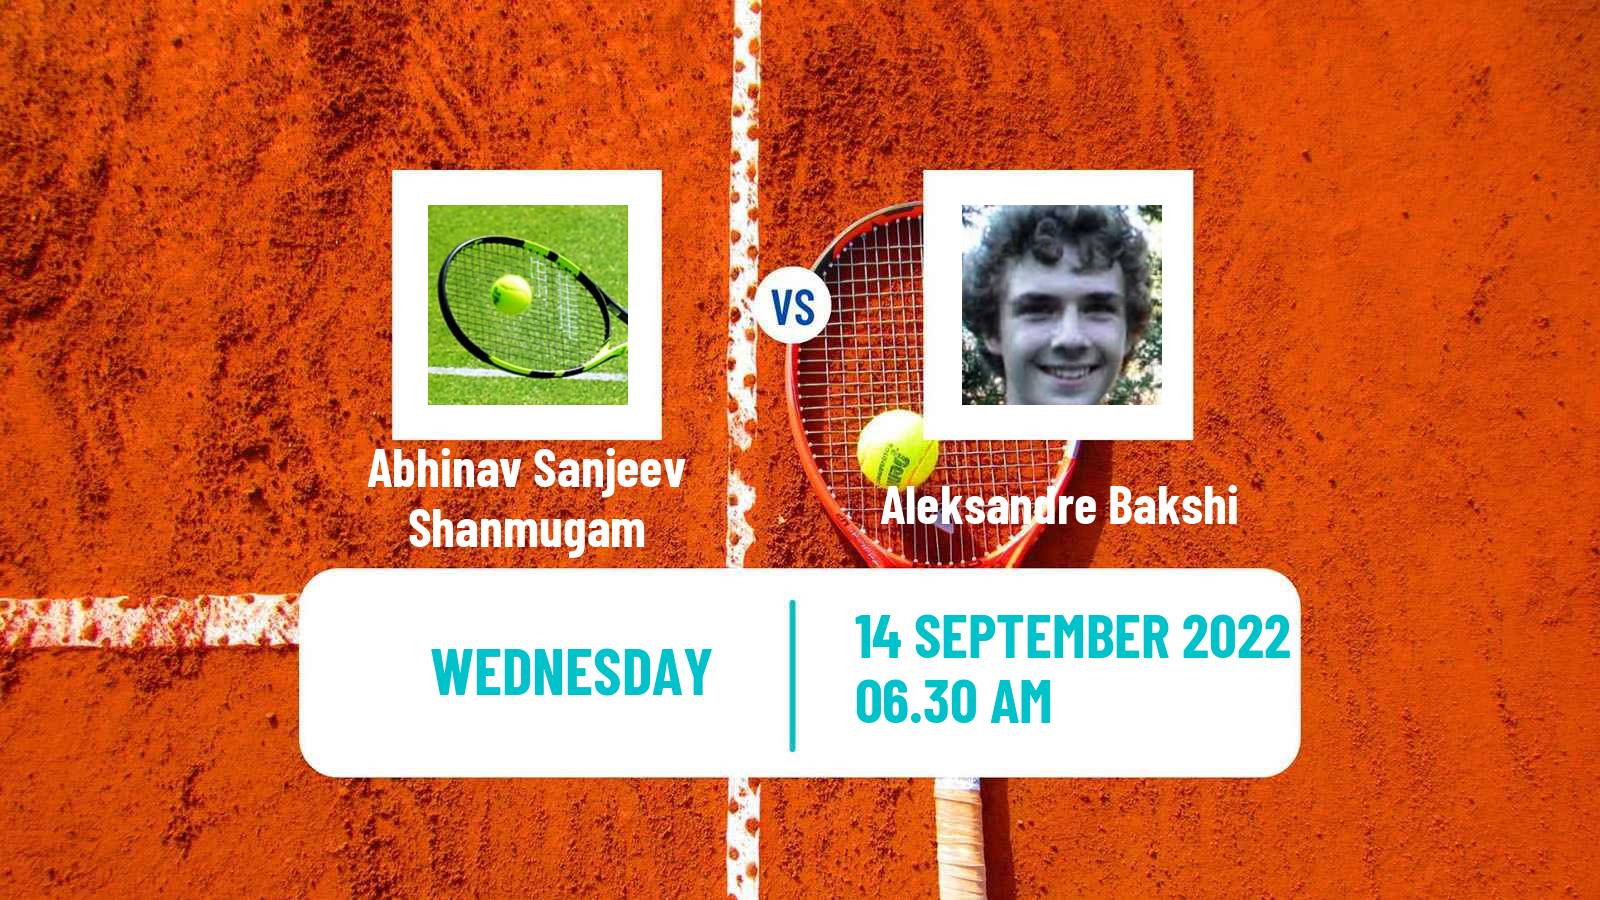 Tennis ITF Tournaments Abhinav Sanjeev Shanmugam - Aleksandre Bakshi